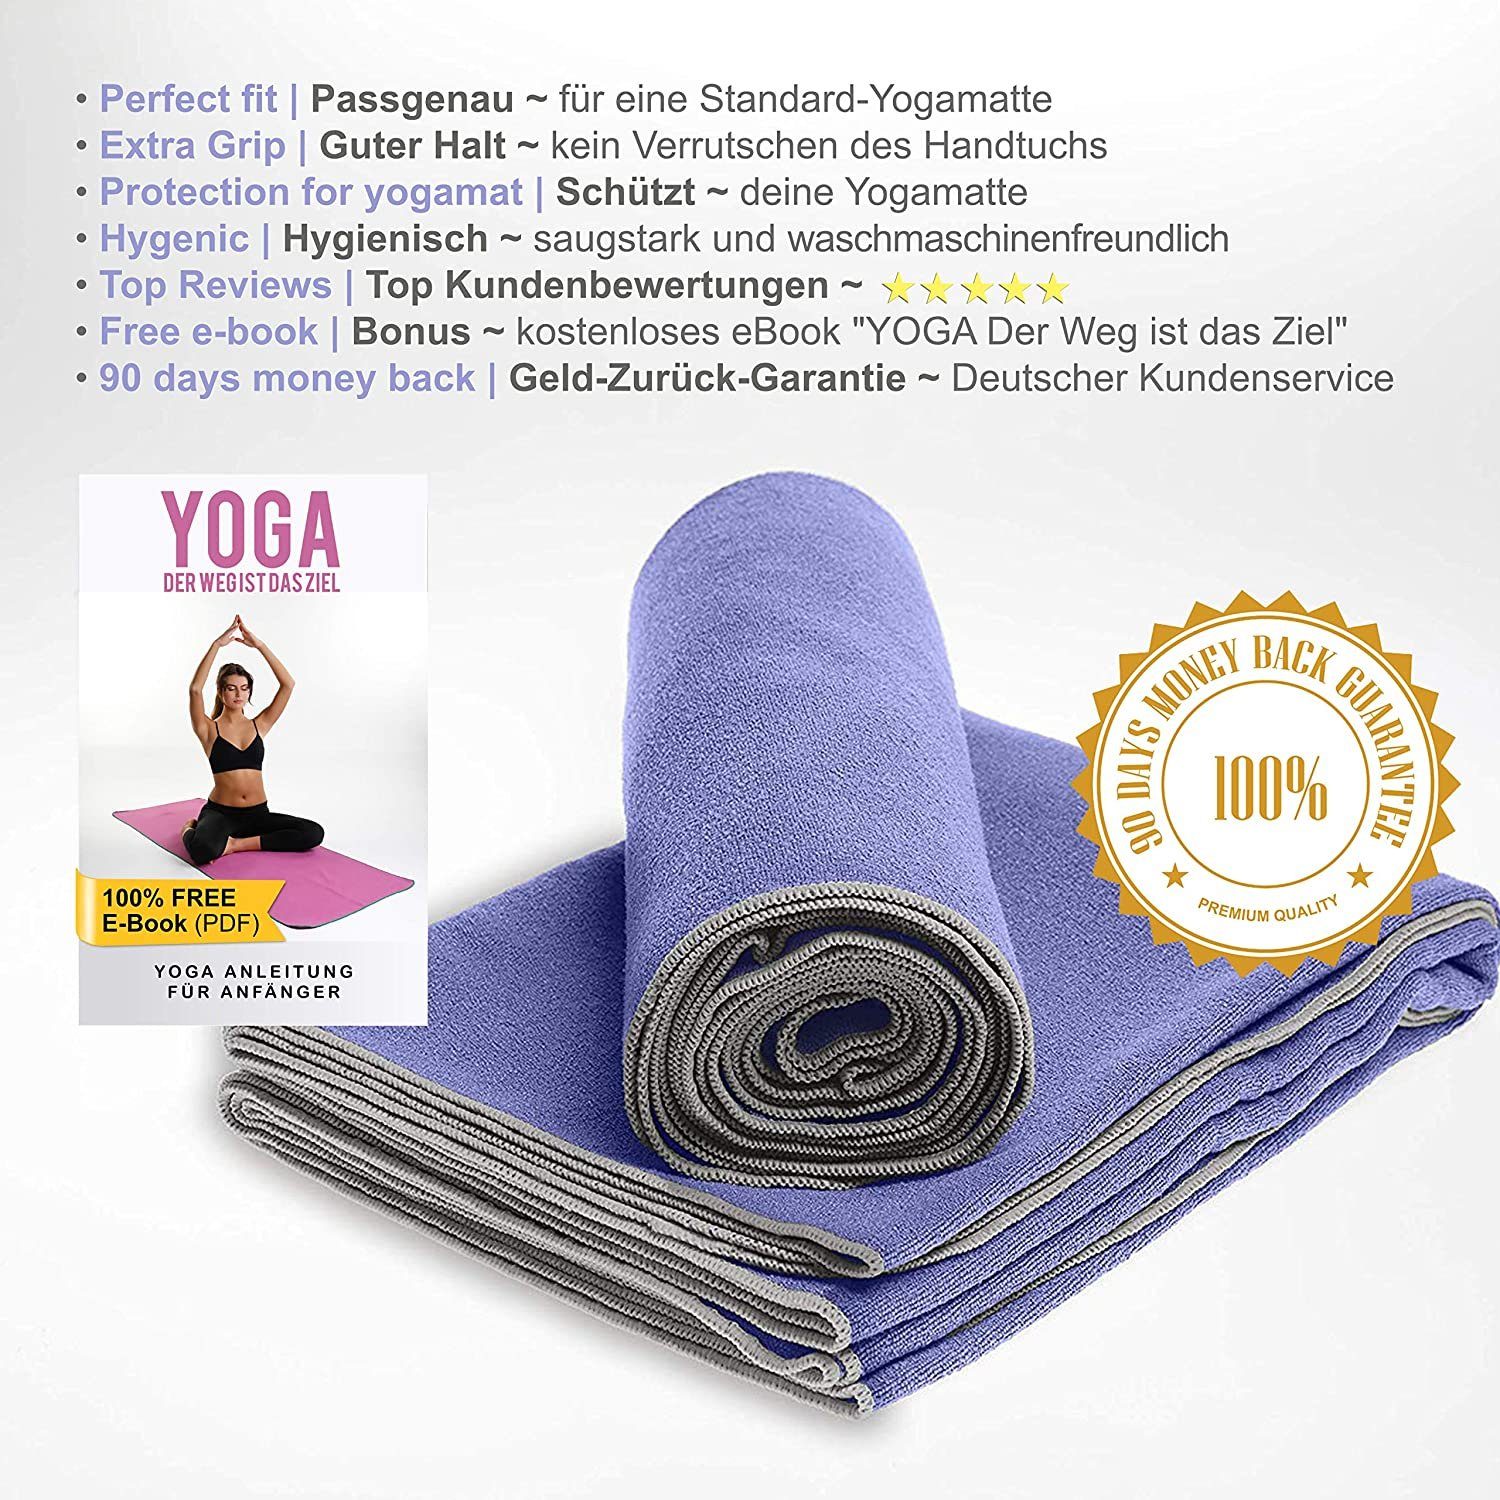 Microfaser, eBook, NirvanaShape Handtuch Yogatuch-Auflage Sporthandtuch Hygienisch Yogamatte, für Yoga Yogatuch-Auflage +Yoga Saugstark, Antirutsch-Noppen, mit Lila Einführungs